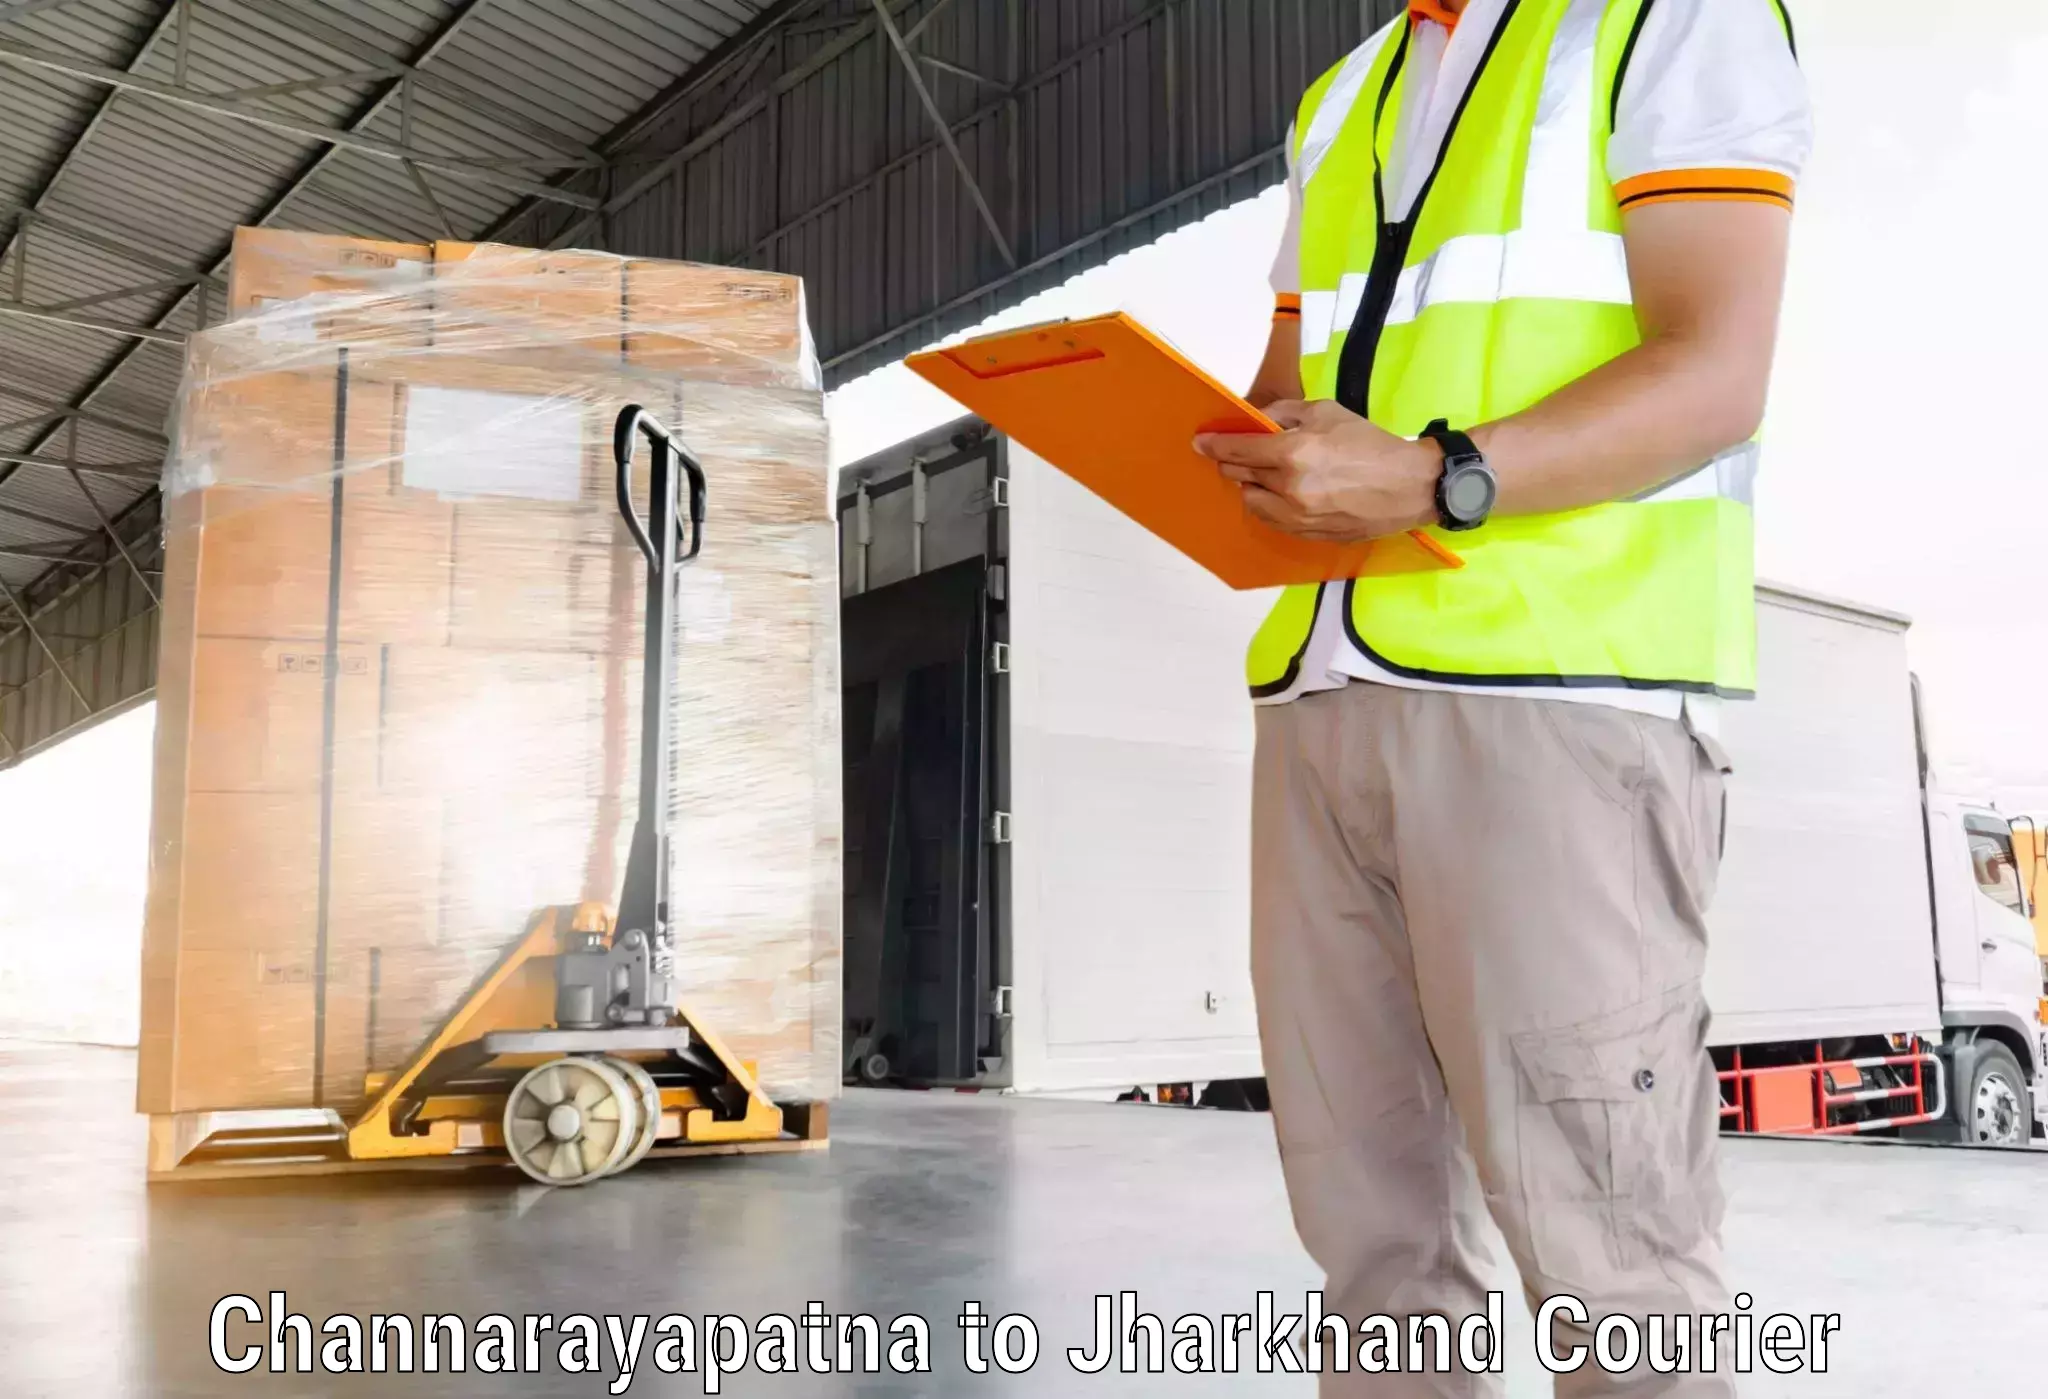 Express delivery capabilities Channarayapatna to Nirsa